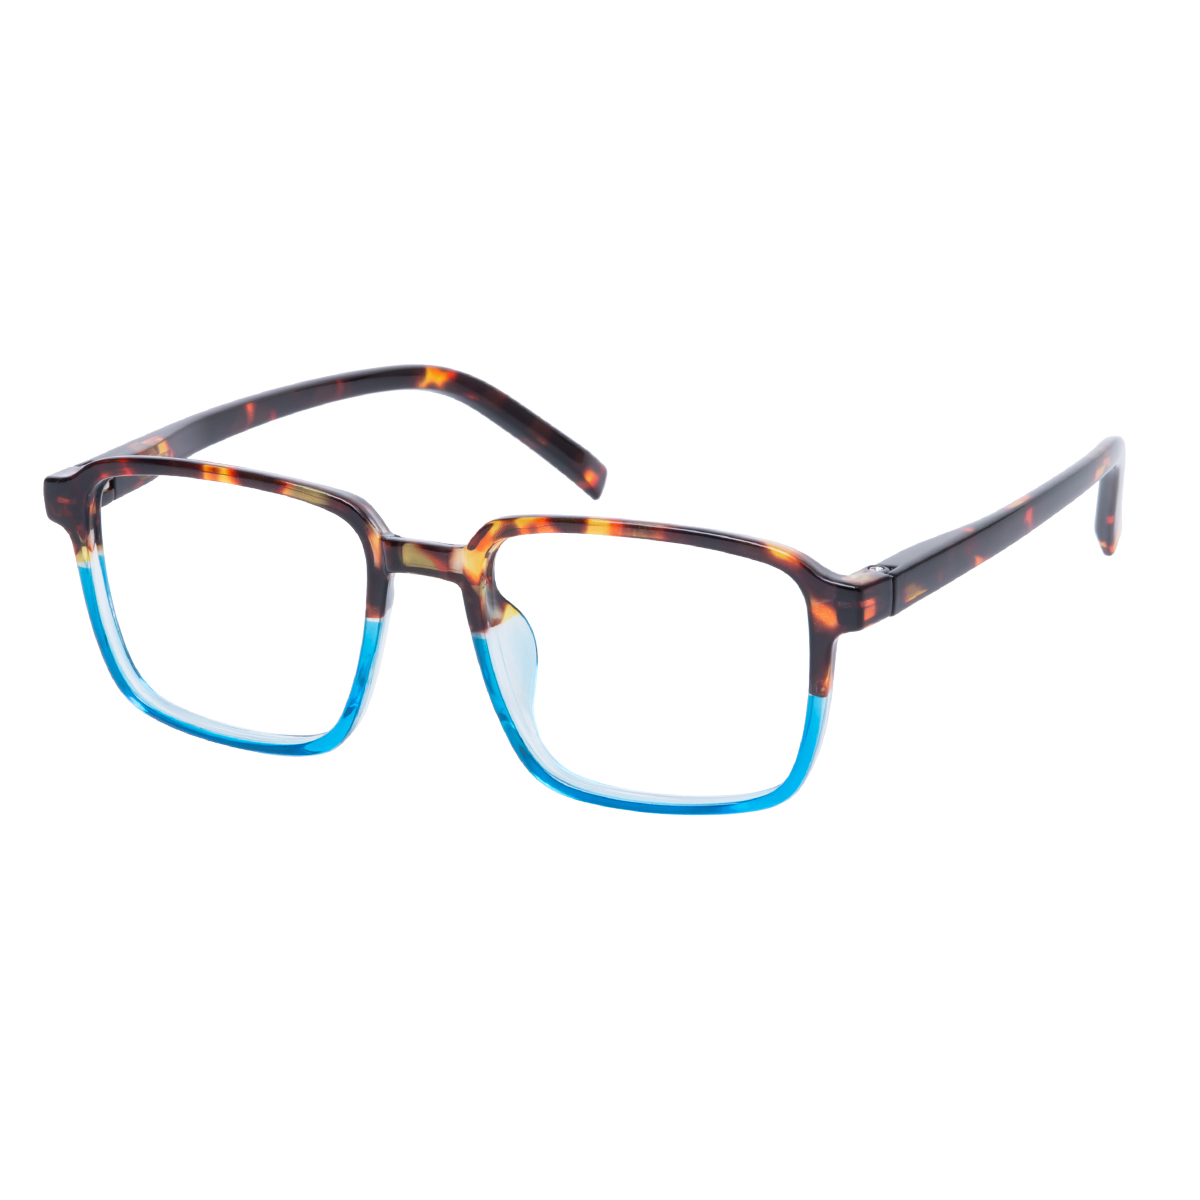 Marlowe - Square Tortoiseshell-Blue Reading Glasses for Men & Women